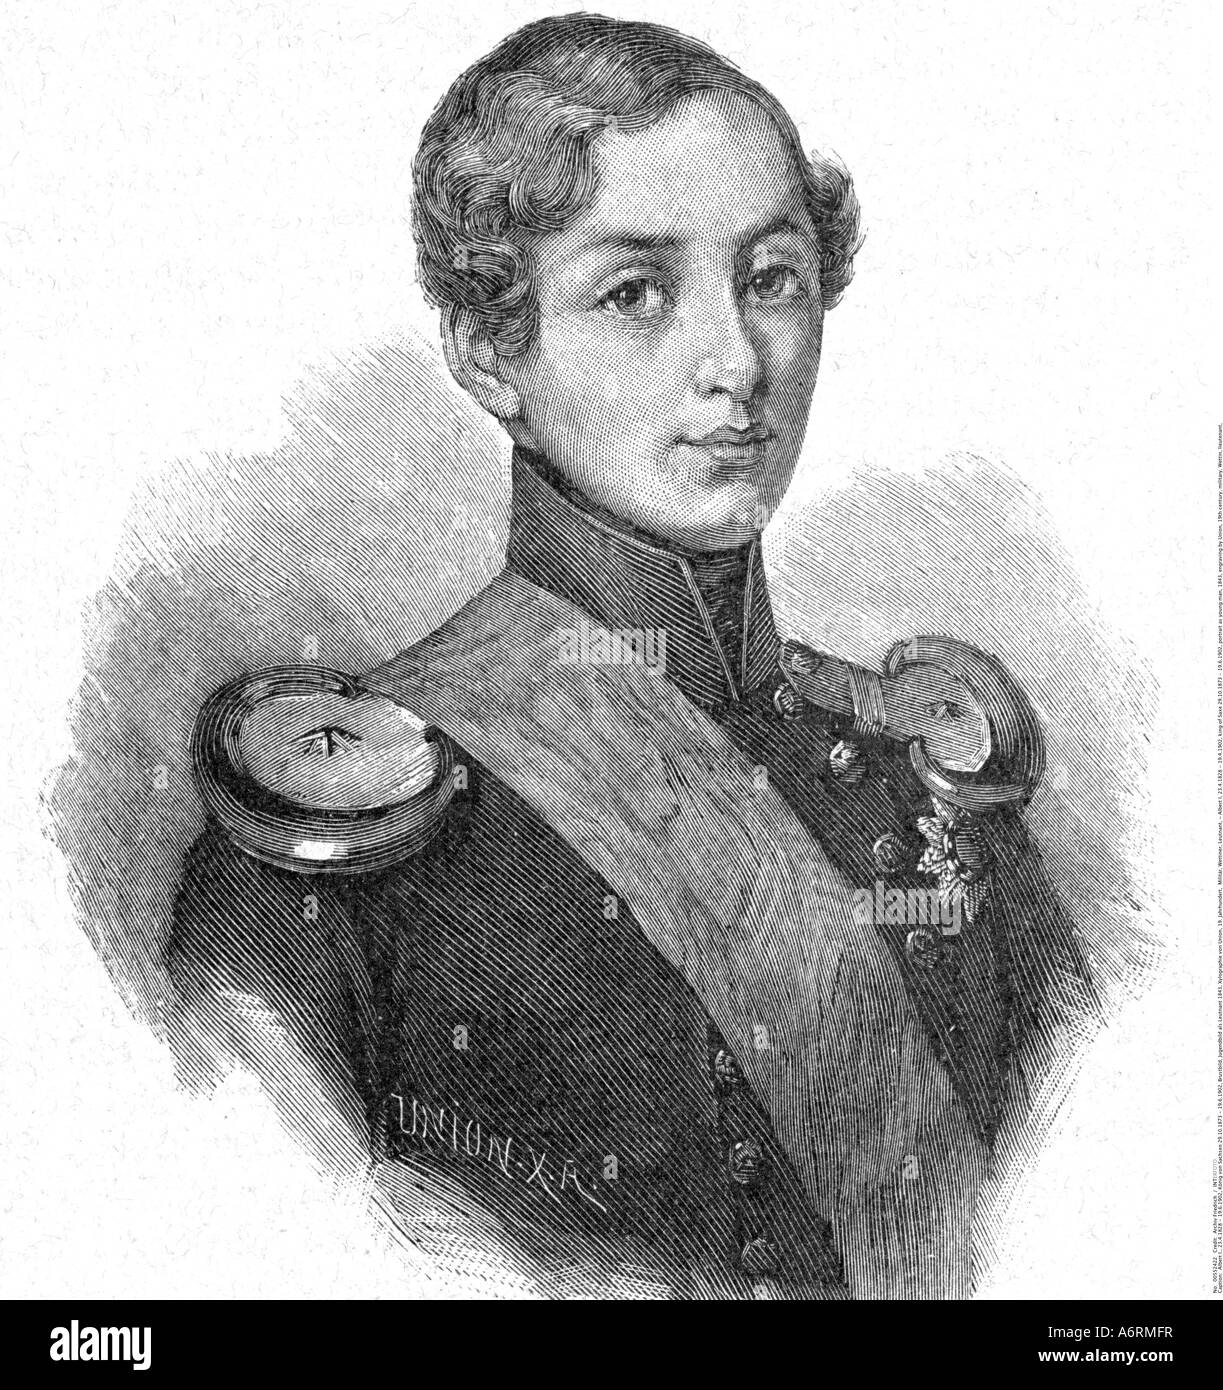 Albert i., 23.4.1828 - 19.4.1902, König von Sachsen 29.10.1873 - 19.6.1902, Portrait als junger Mann, Kupferstich von X. A. Union, ca. 1 Stockfoto